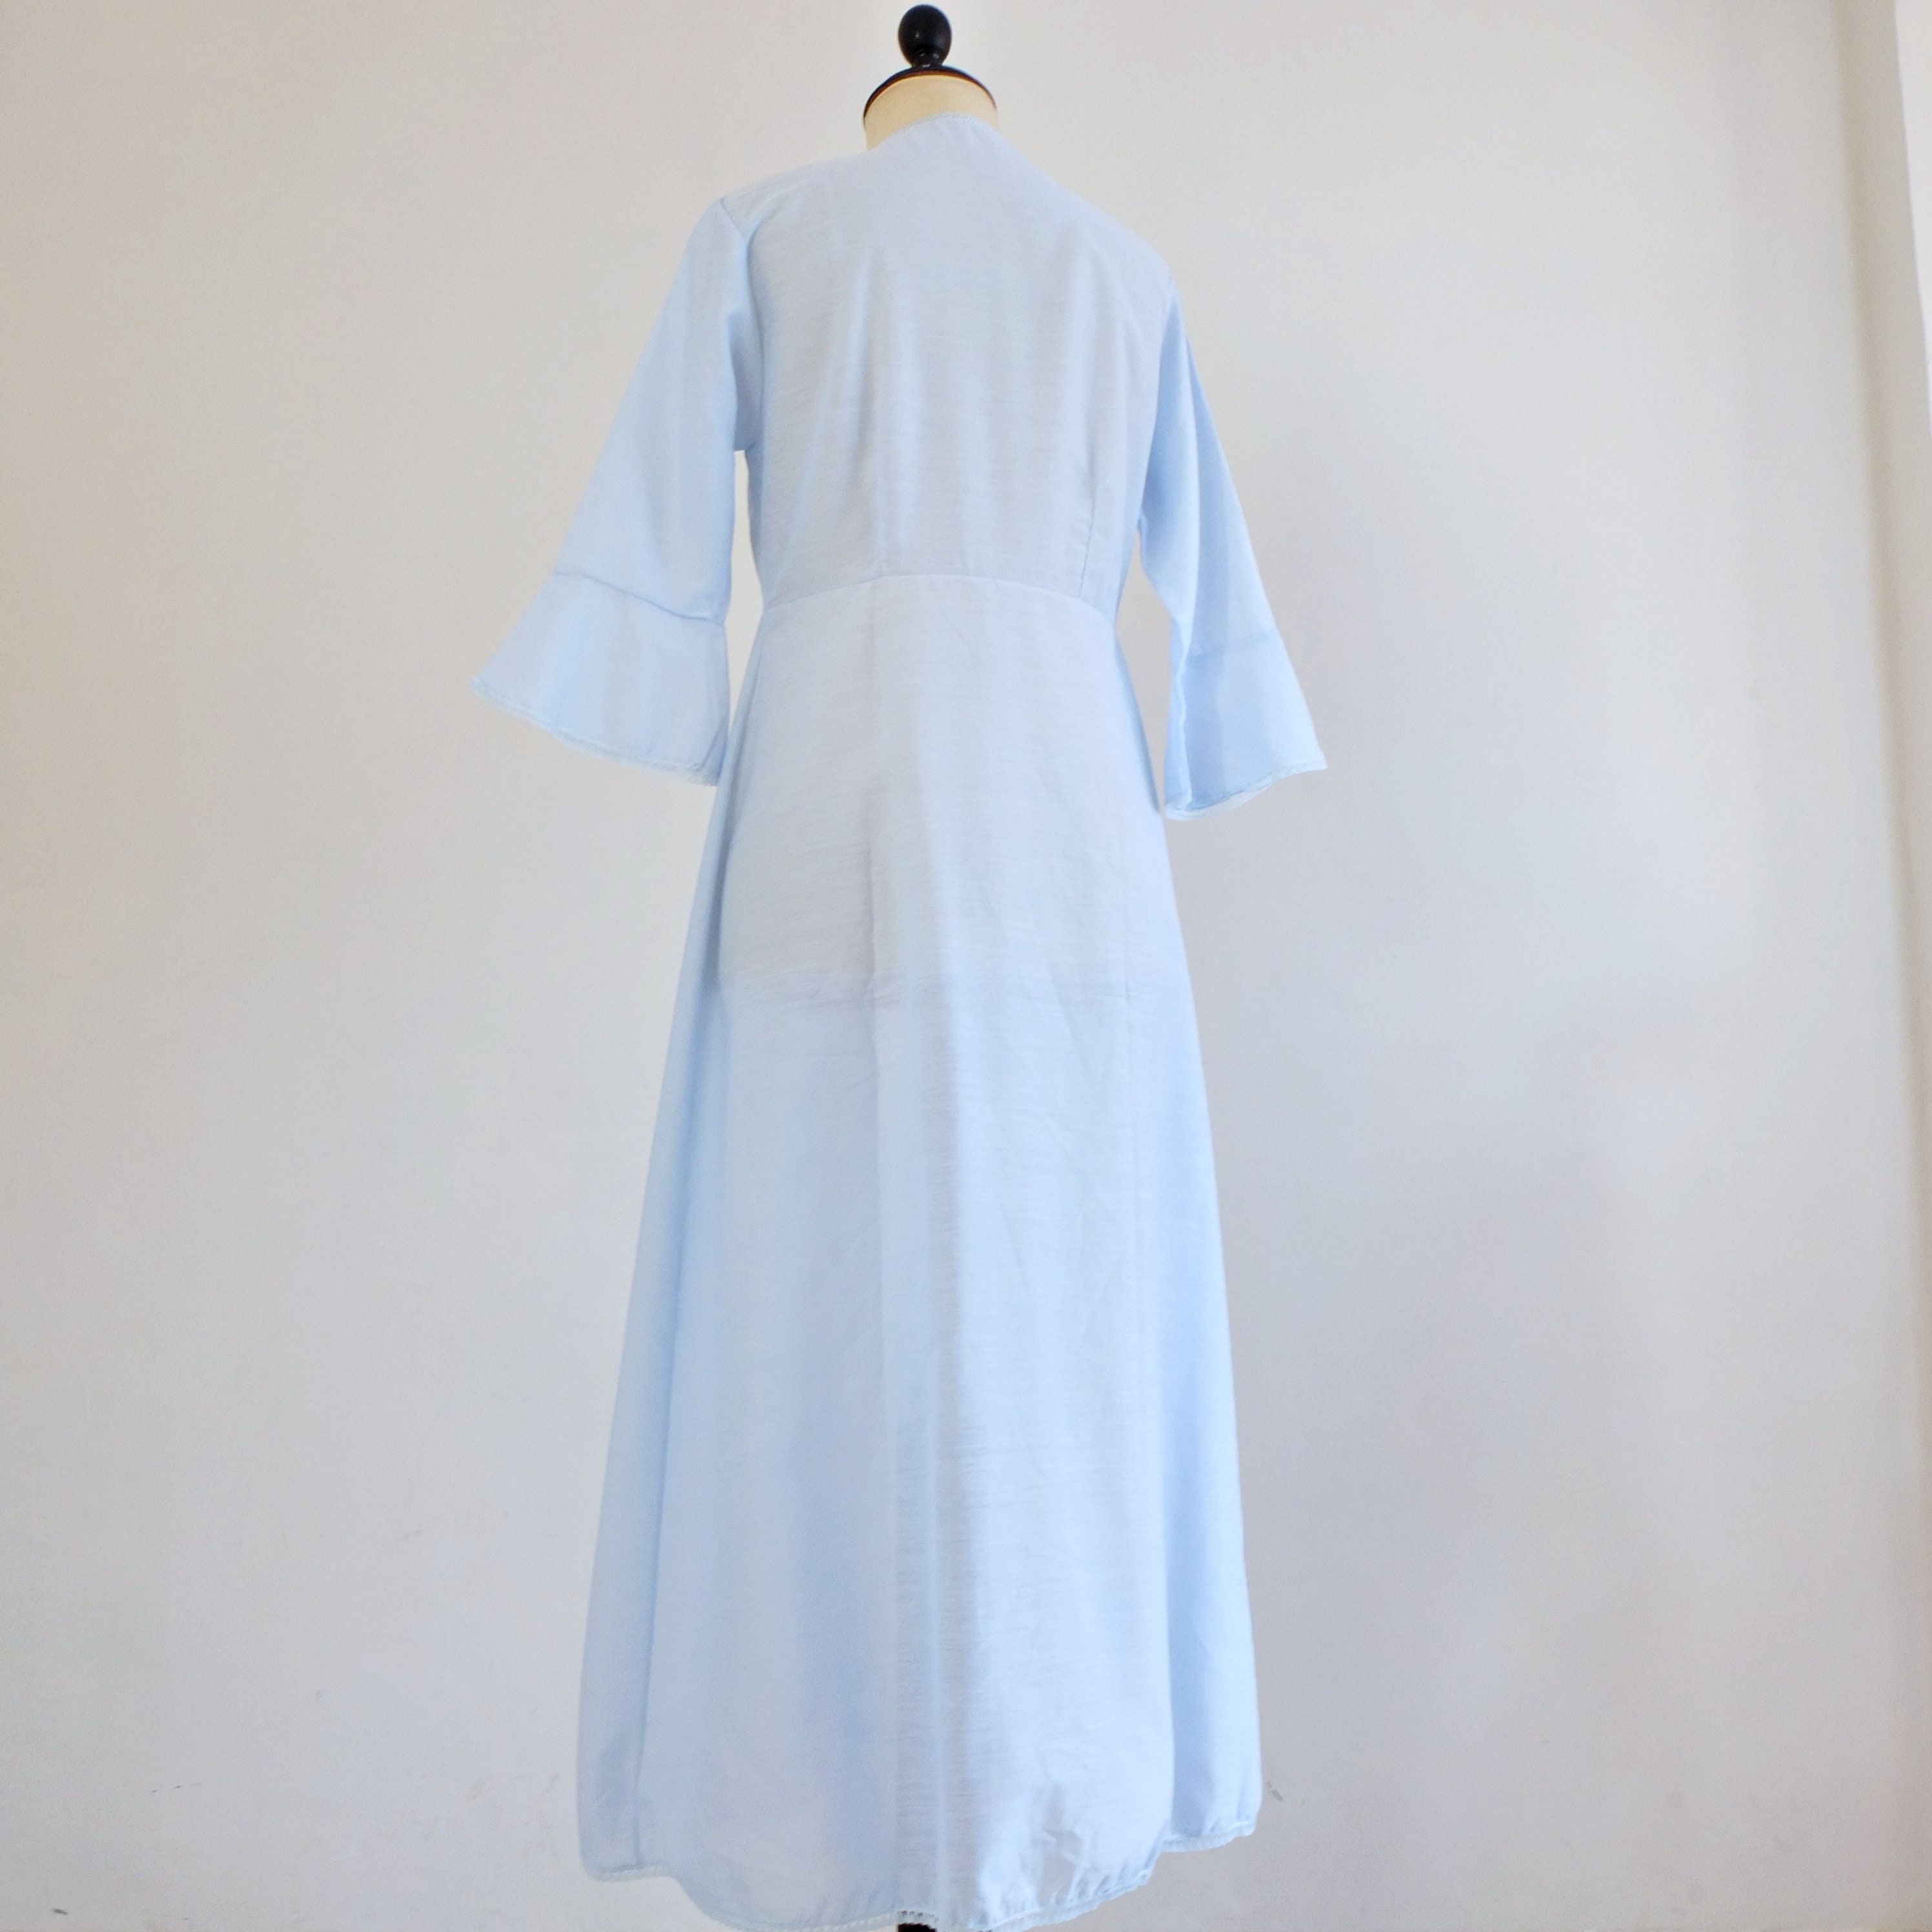 Vintage 70s Peignoir Robe Light Blue Sheer Dressing Gown 70s - Etsy